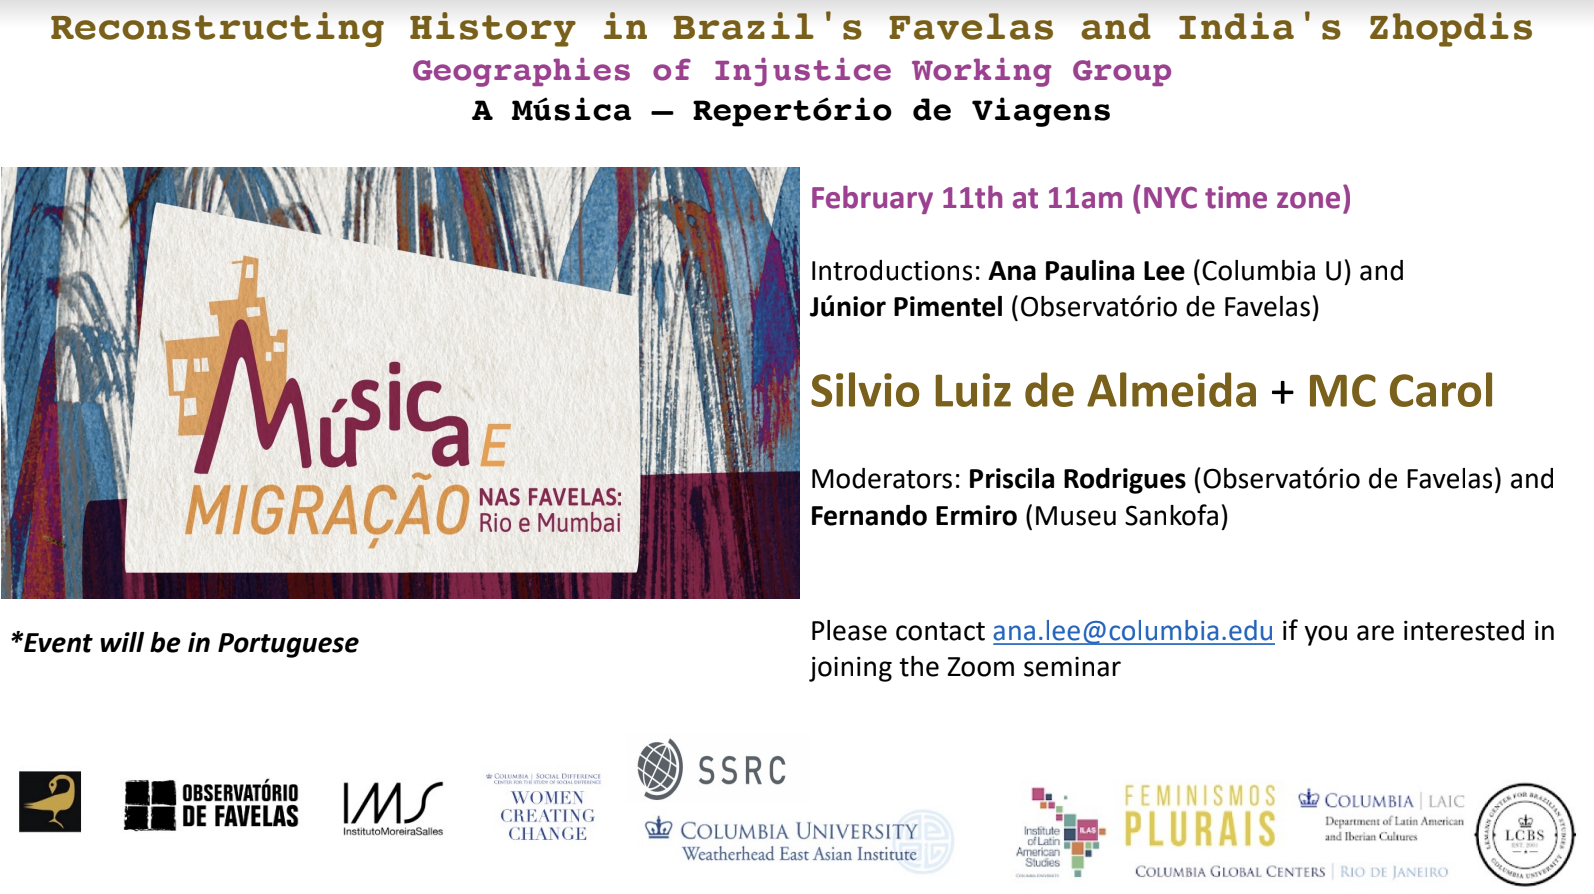 Event Title on White Background; Image of Musica e Migração nas favelas on left